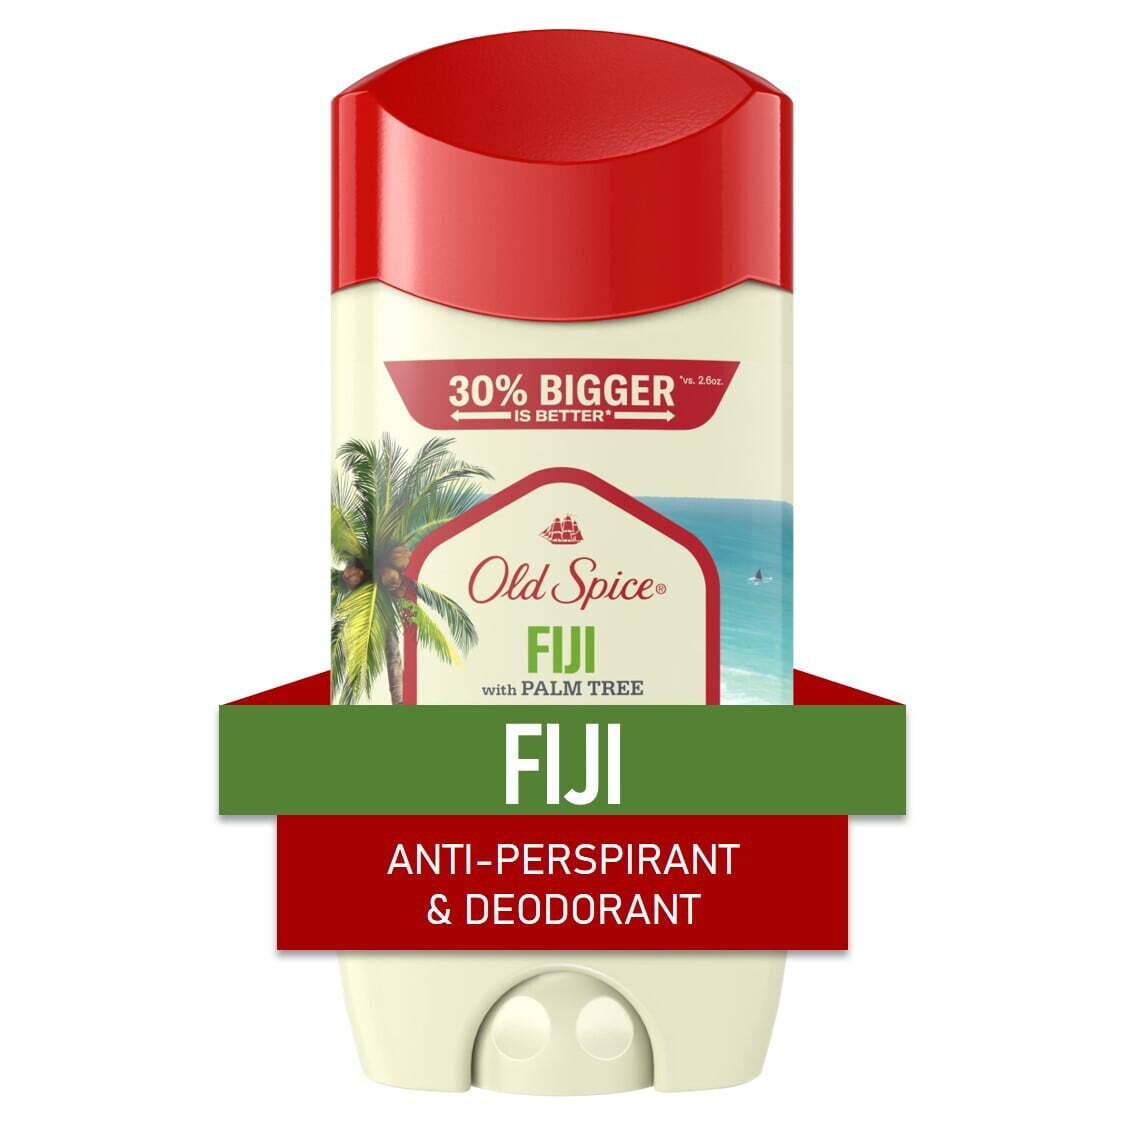 Old Spice Men's Antiperspirant Deodorant Fiji with Palm Tree, 3.4 oz